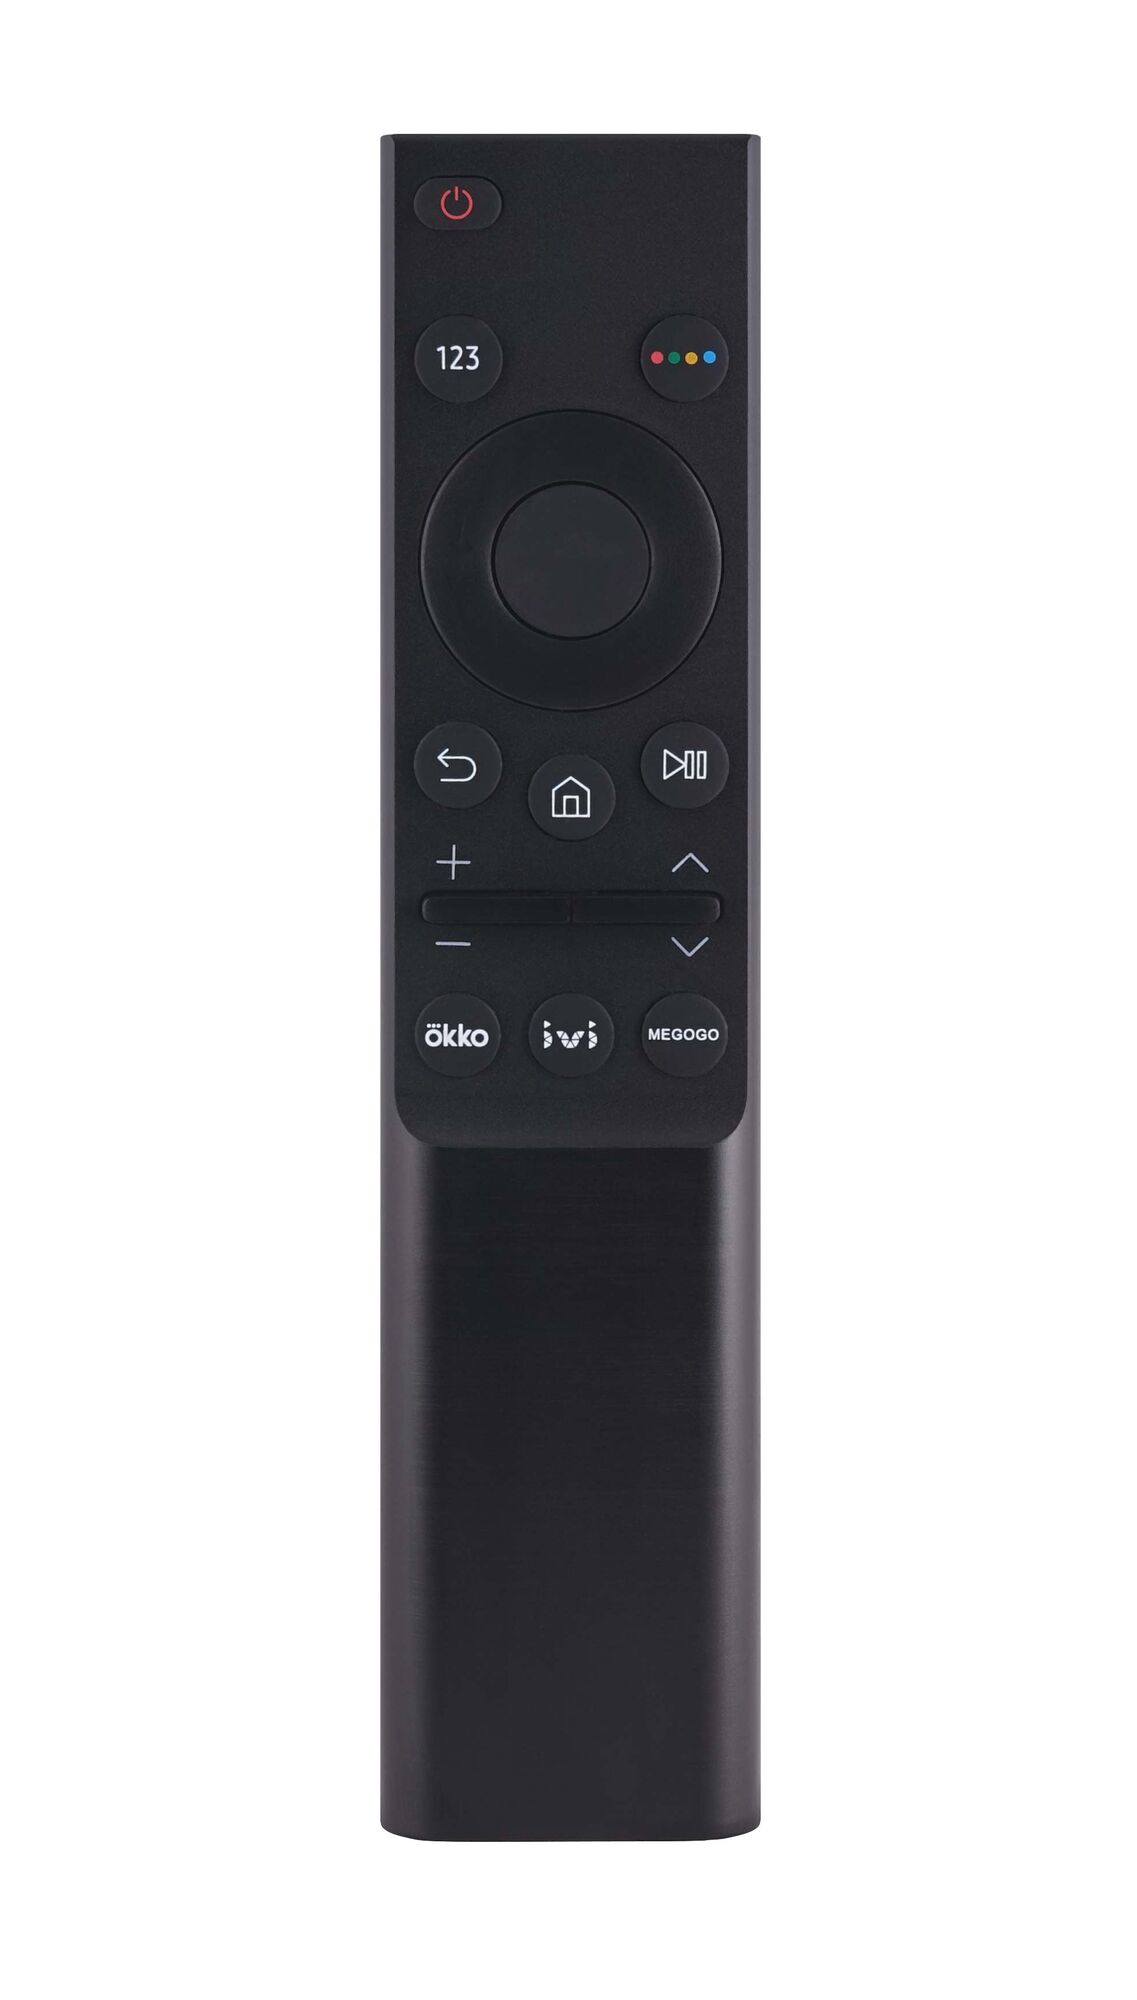 Пульт ДУ Samsung BN59-01358F Smart Control Okko, Ivi, Megogoo LED TV